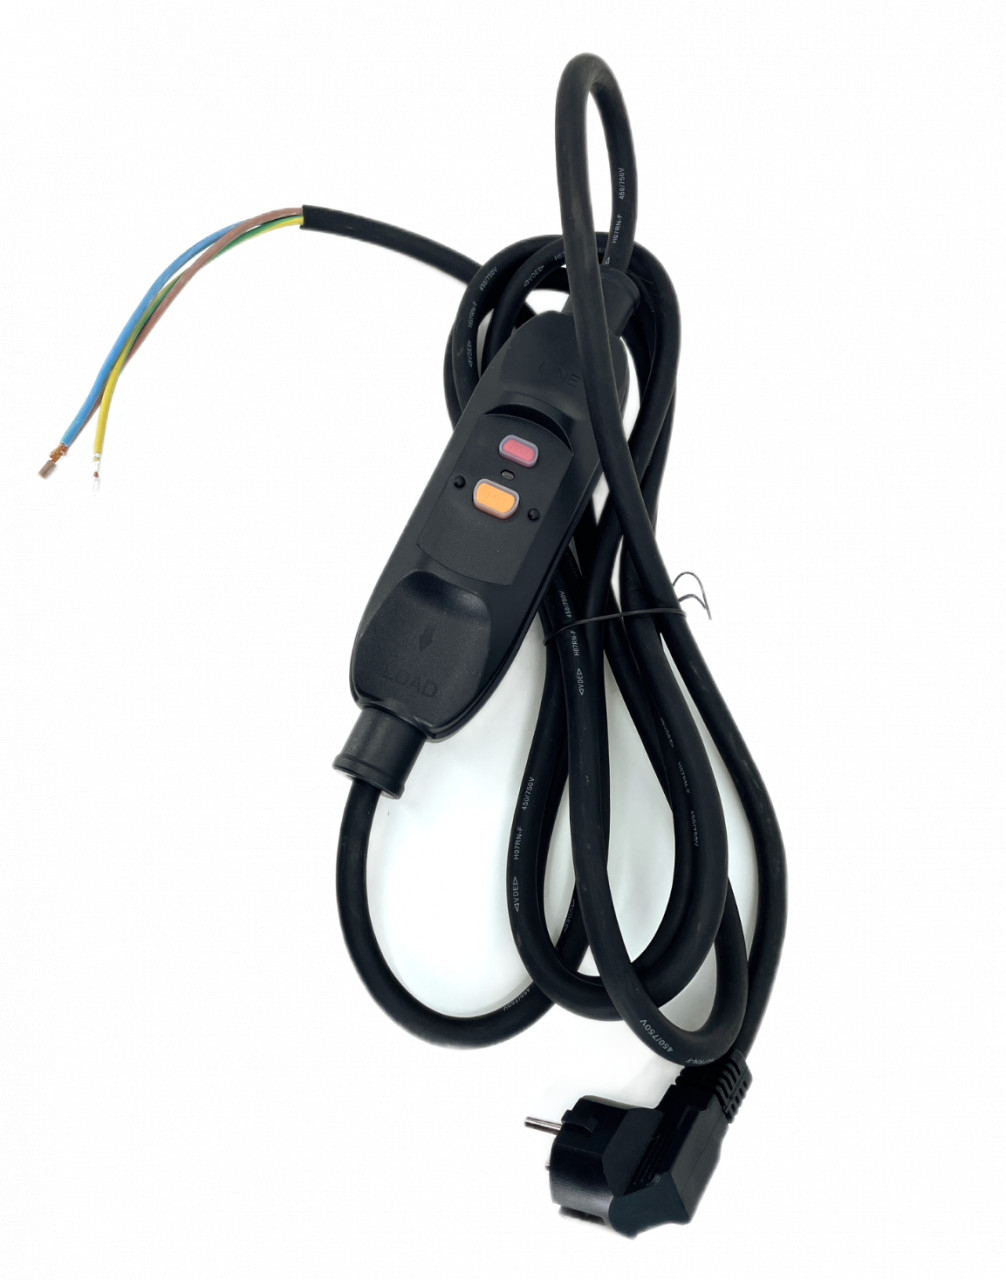 Cablu de alimentare 230V 16A IP66 cu stecher si siguranta PRCD, intrerupator de protectie personala pentru scule KEDU PD22A – CNO-CK-PRCD-cablu 16A imagine noua